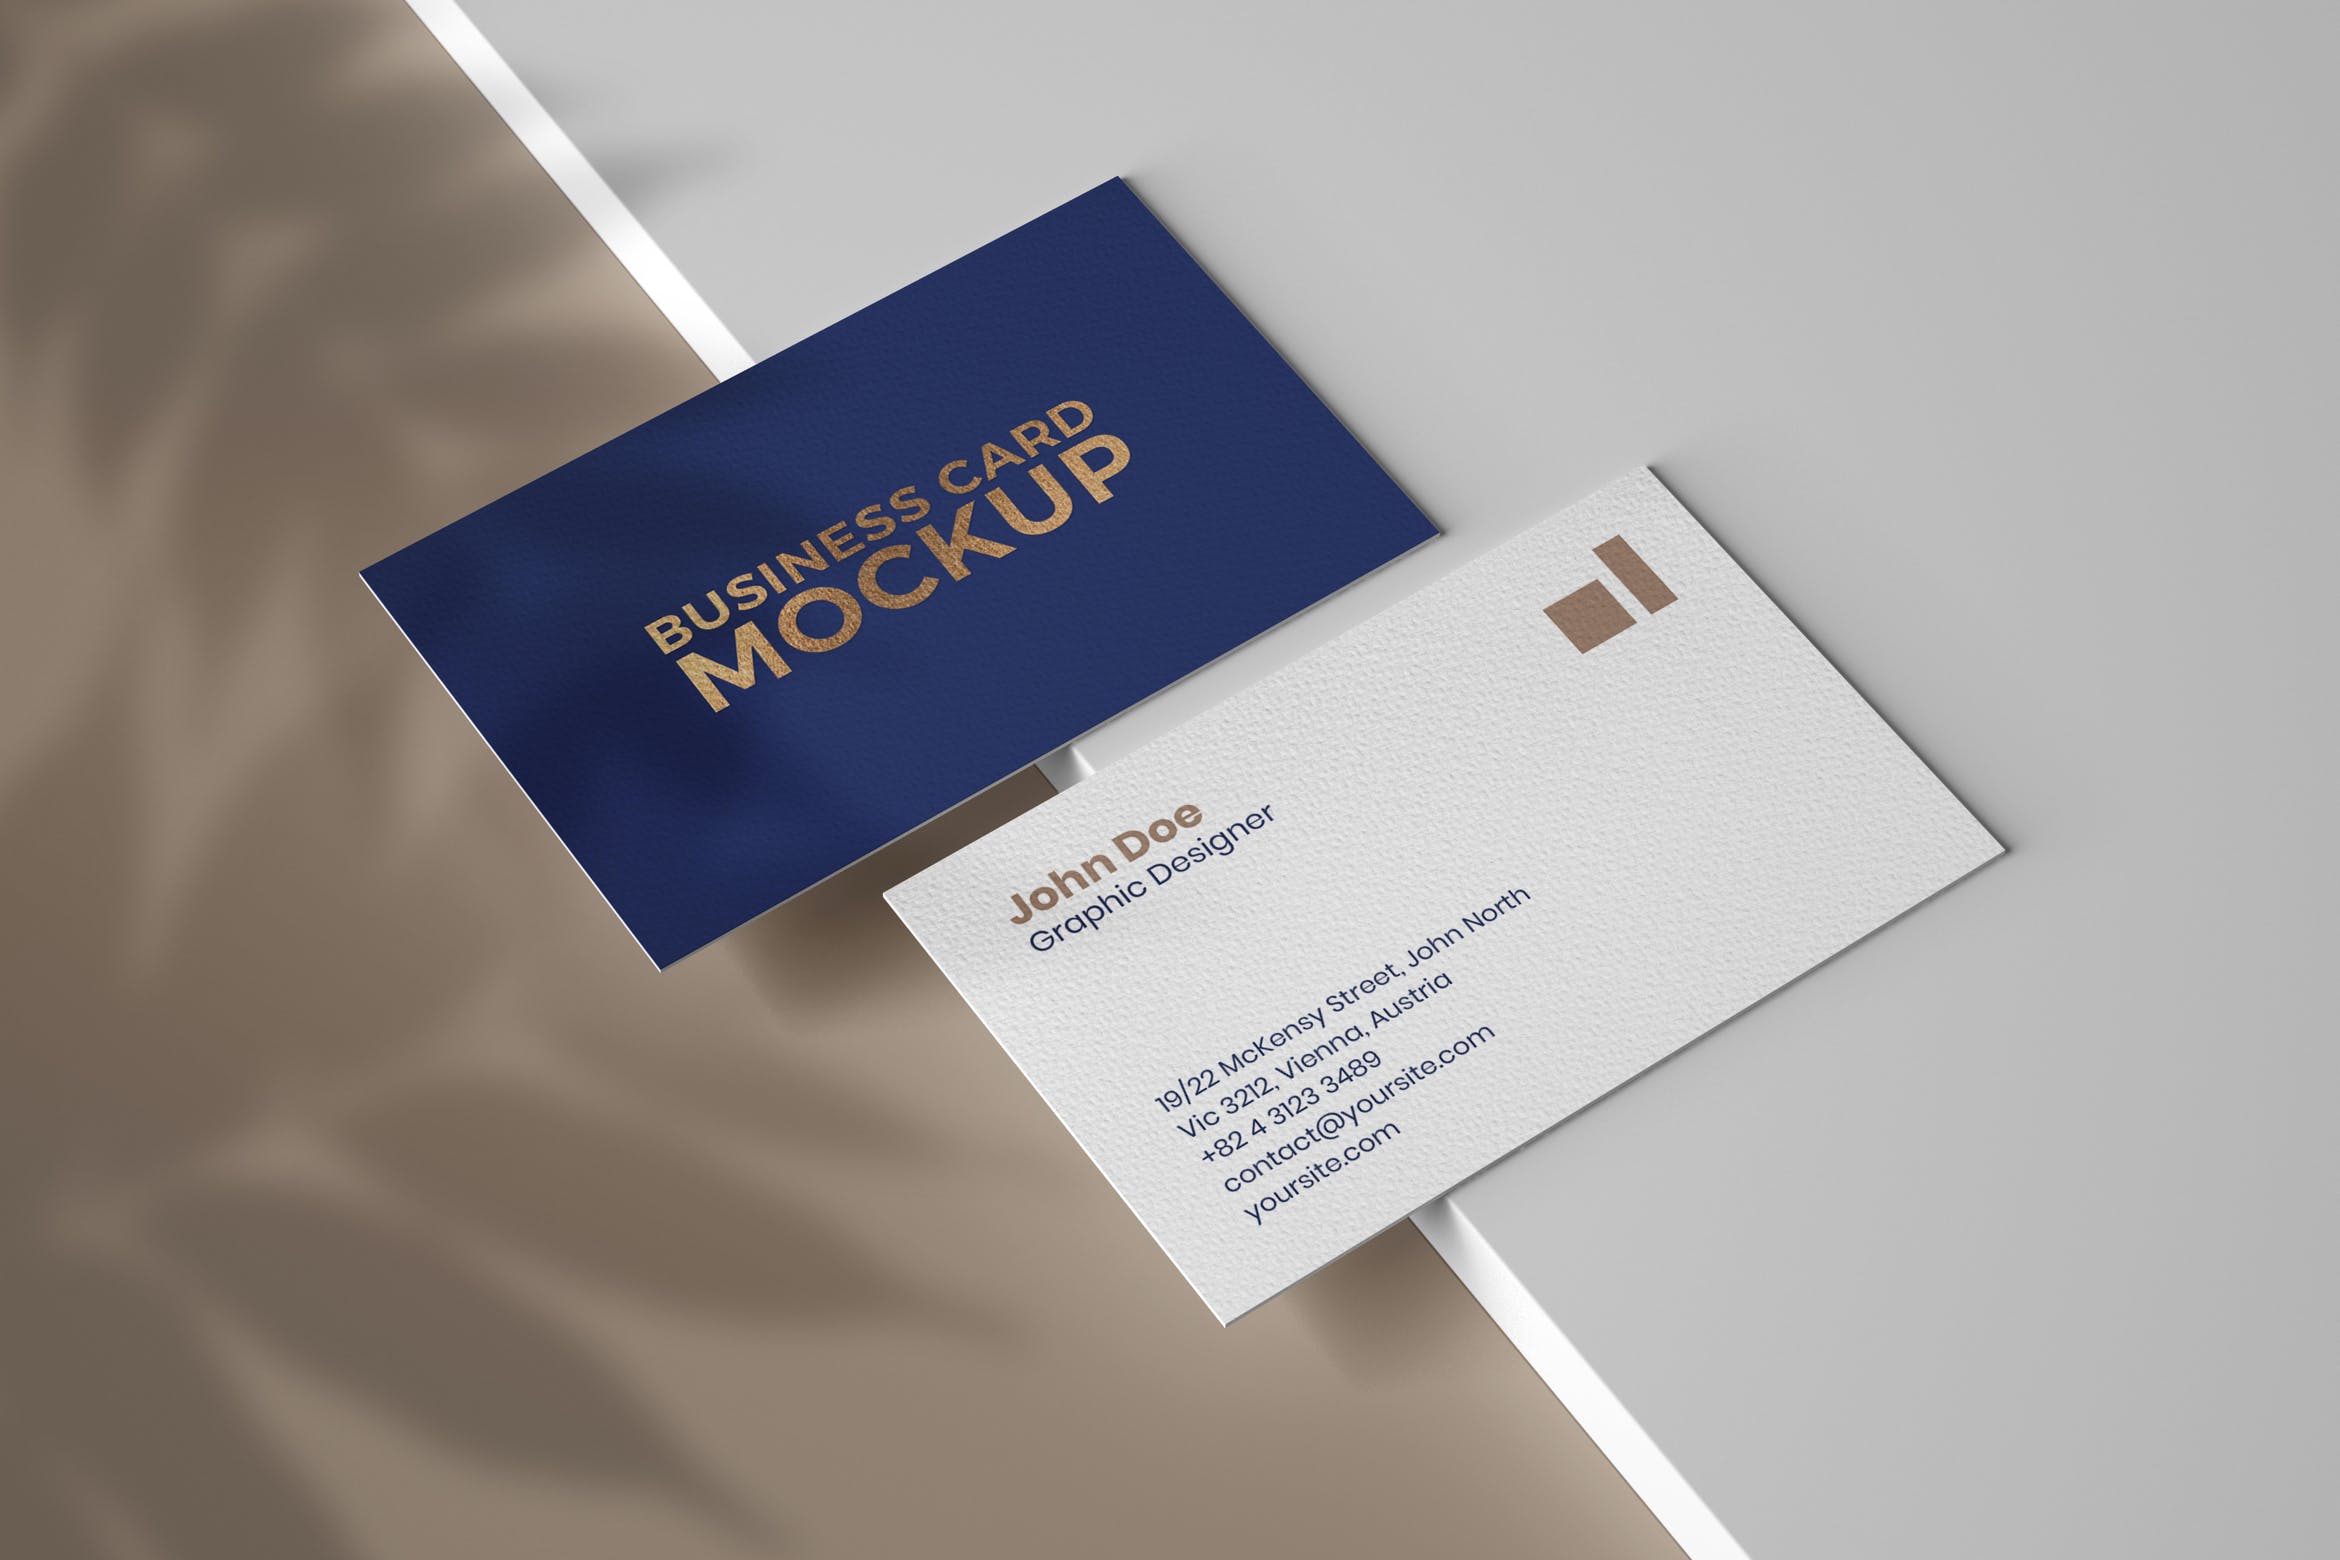 名片植物阴影效果图样机模板 Business Card Mockup With Overlay Shadow设计素材模板